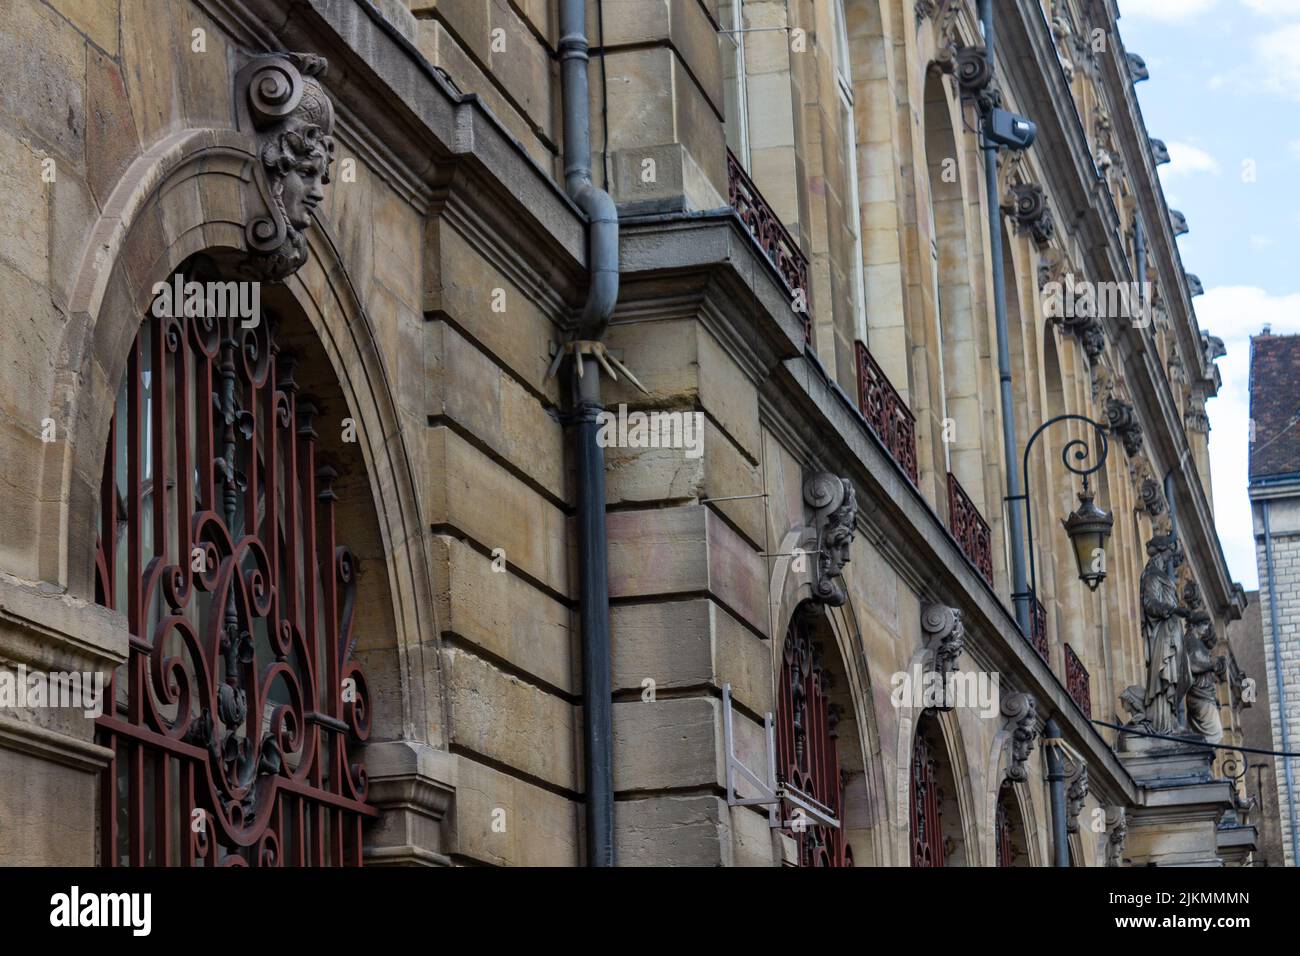 Gli splendidi dettagli architettonici degli edifici storici di Digione. Borgogna, Francia. Foto Stock